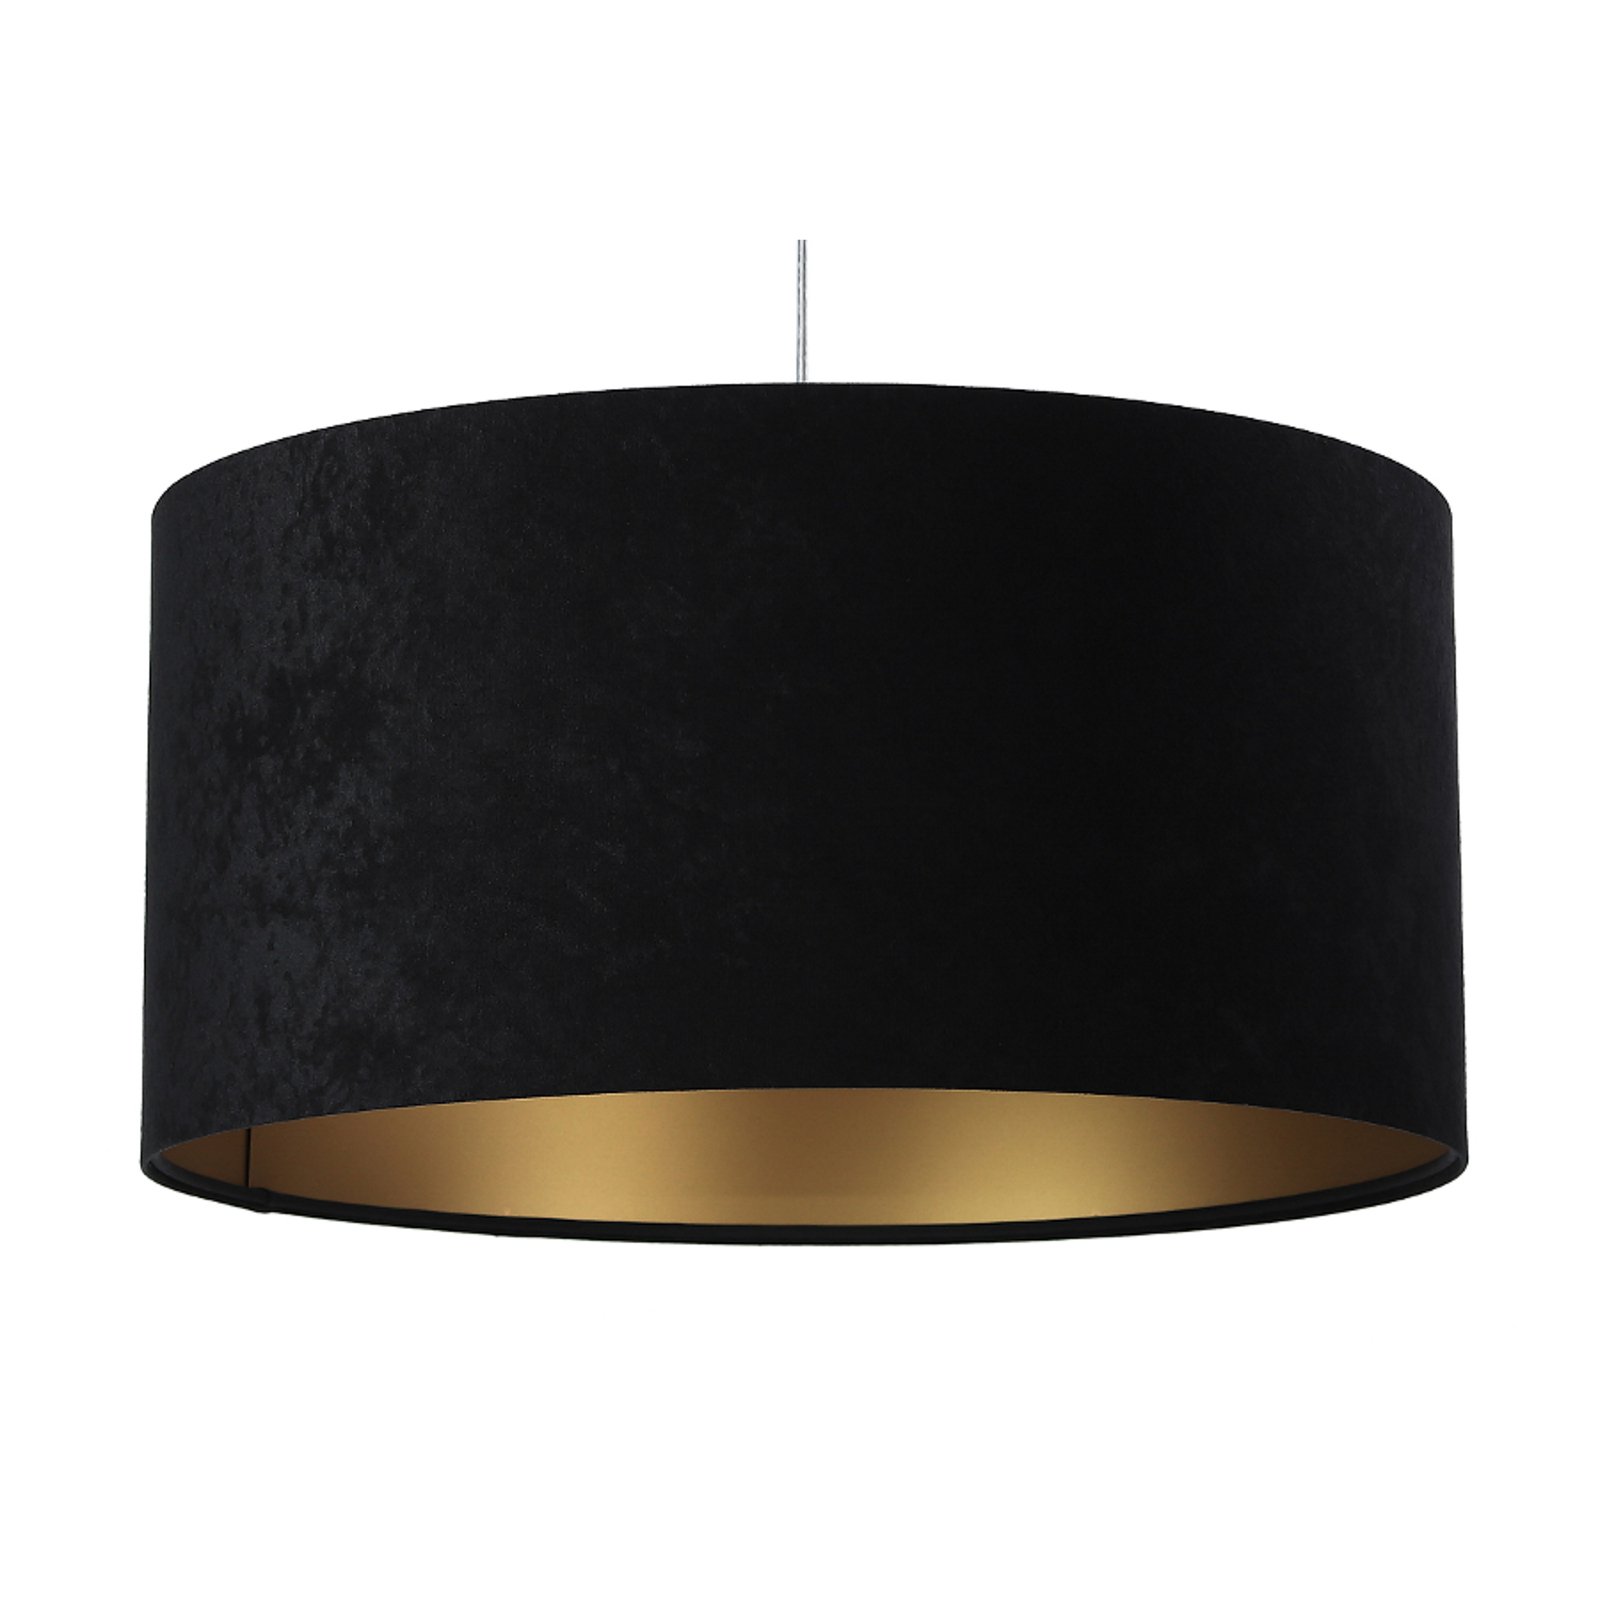 Hanglamp Salina, zwart/goud, Ø 40cm